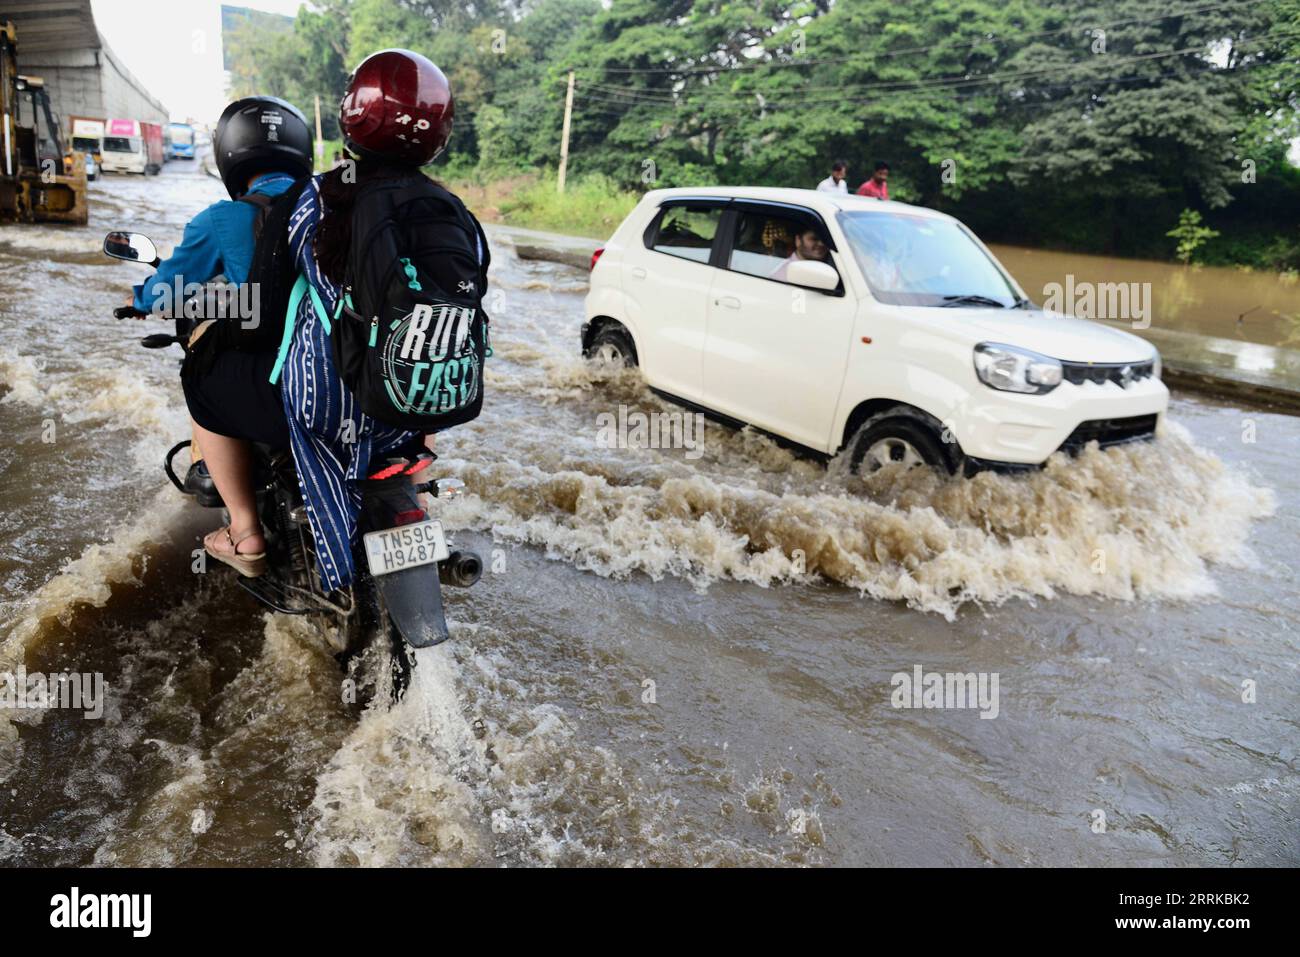 220830 -- BANGALORE, le 30 août 2022 -- des véhicules roulent sur une route inondée après de fortes pluies à Bangalore, en Inde, le 30 août 2022. Str/Xinhua INDE-BANGALORE-INONDATION KASHIFxMASOOD PUBLICATIONxNOTxINxCHN Banque D'Images